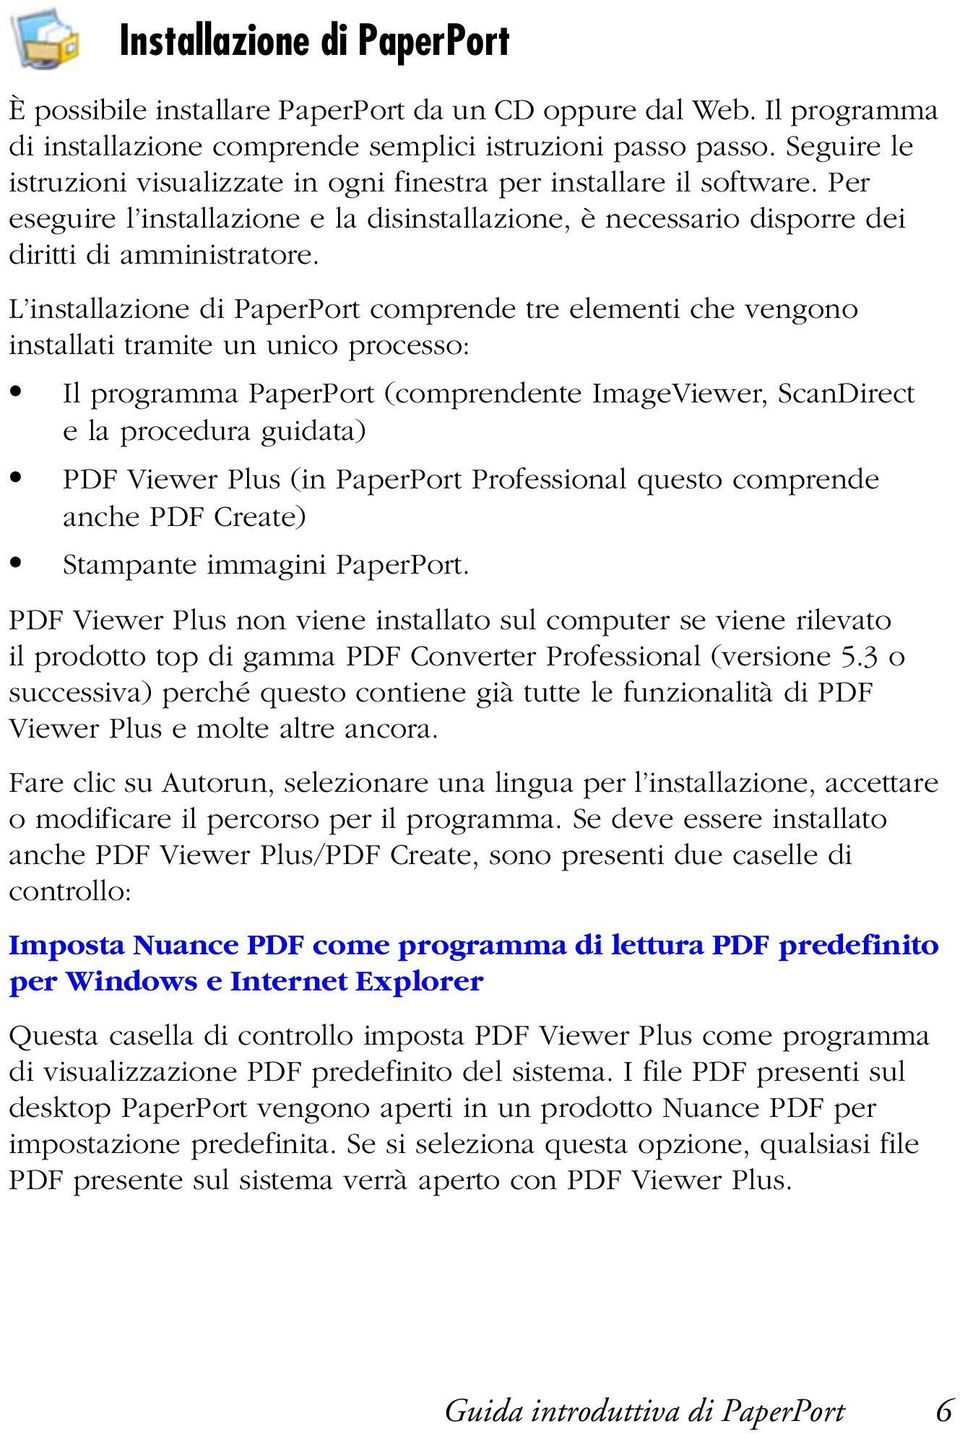 L installazione di PaperPort comprende tre elementi che vengono installati tramite un unico processo: Il programma PaperPort (comprendente ImageViewer, ScanDirect e la procedura guidata) PDF Viewer